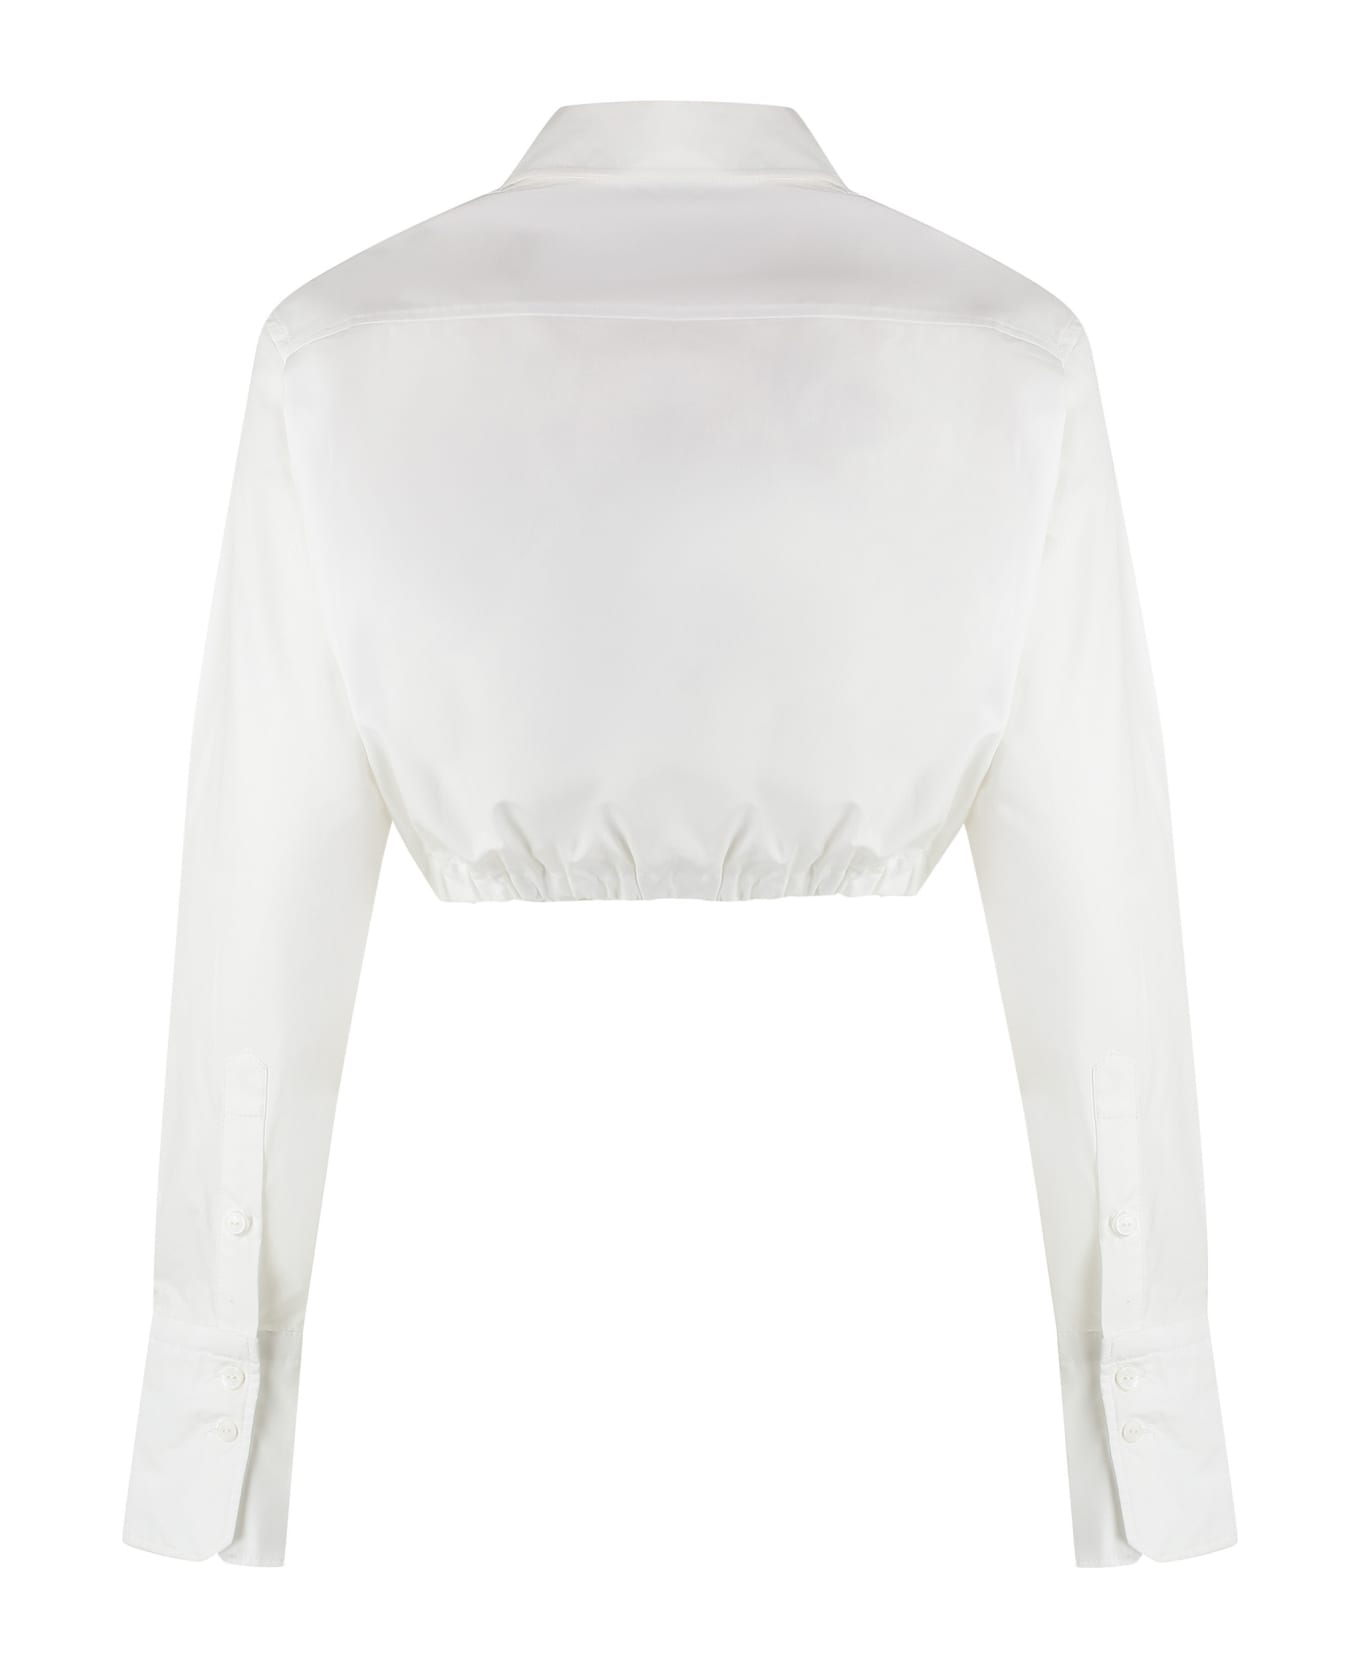 Patou Cropped Poplin Shirt - White